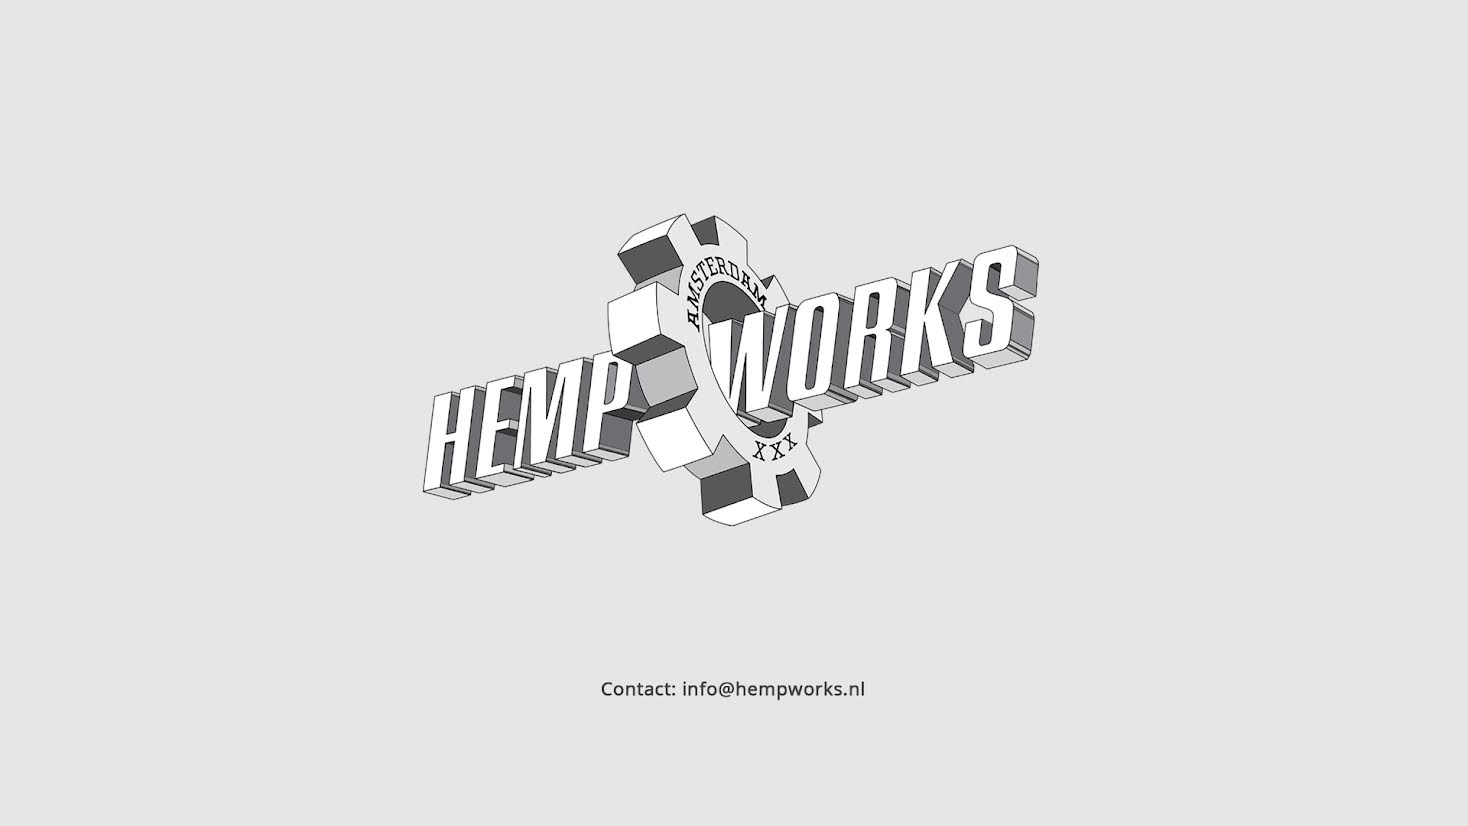 Contact Hempworks